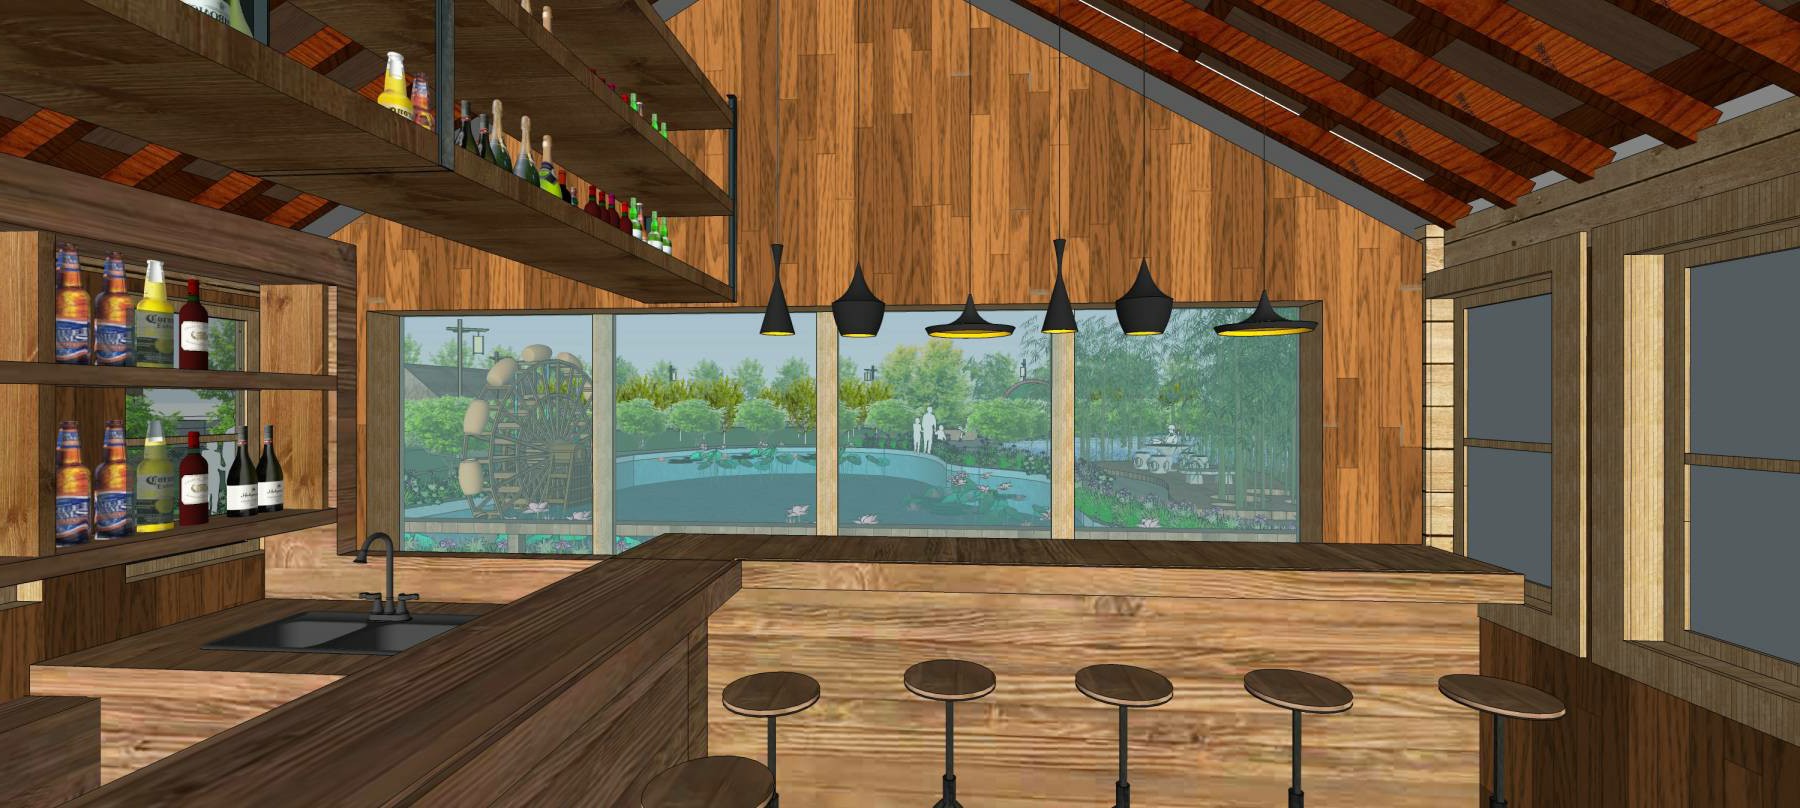 城市生态农业园乡村旅游有机餐厅 sketchup室内模型下载 第1张